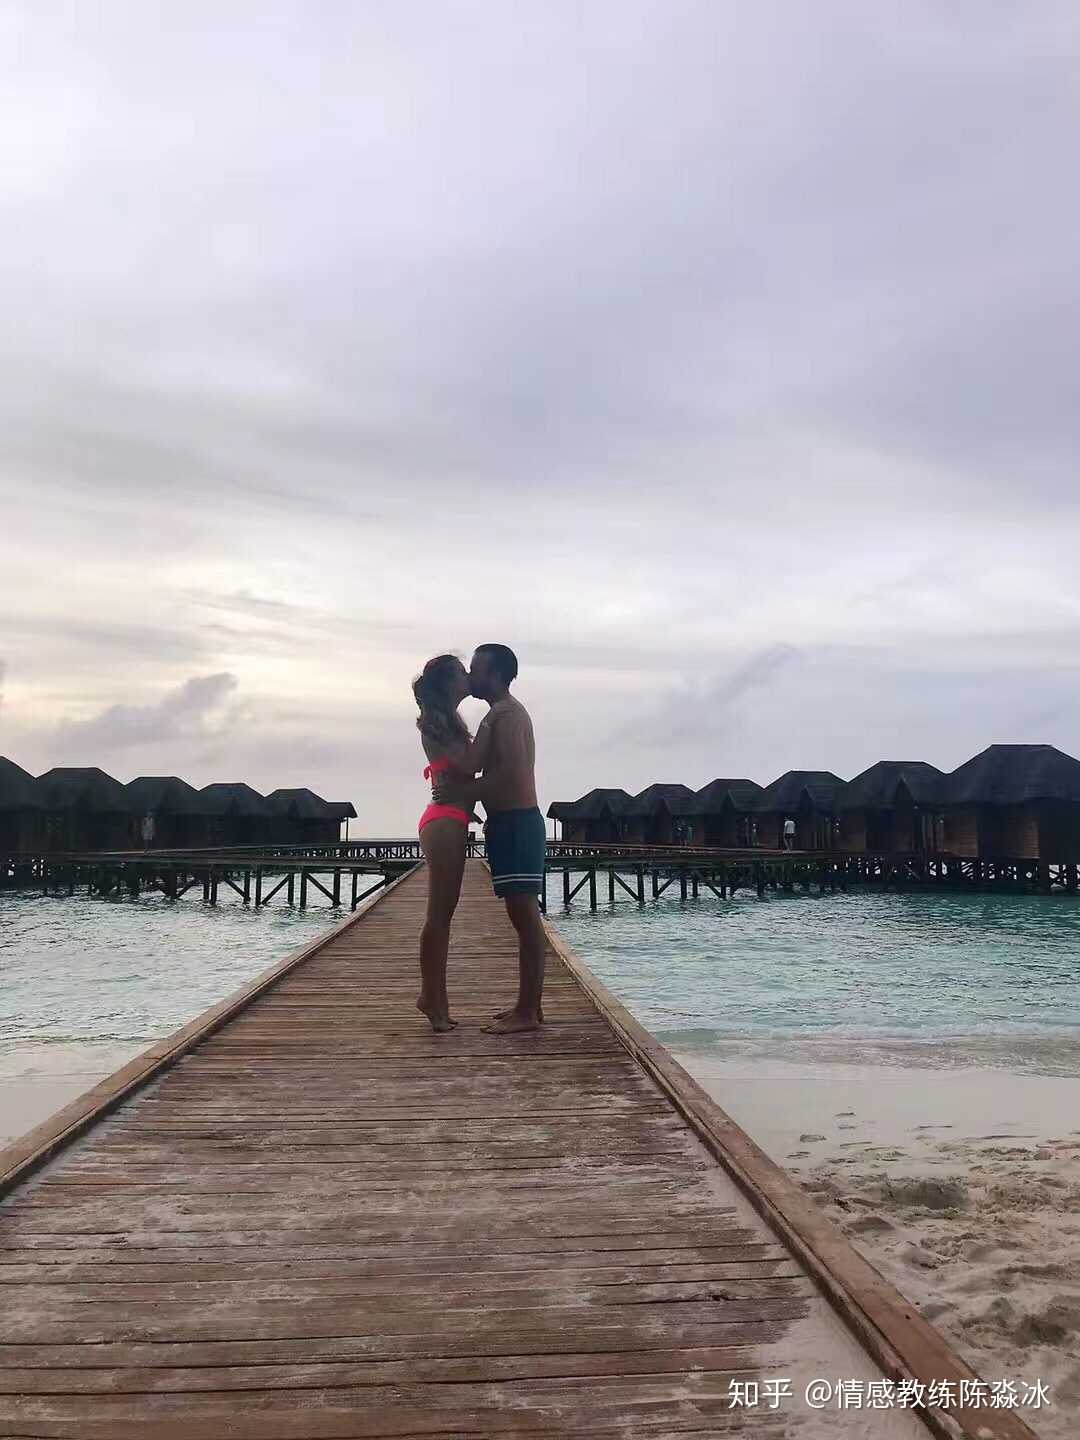 马尔代夫某小岛的沙滩上,偶遇一对情侣要求合照.